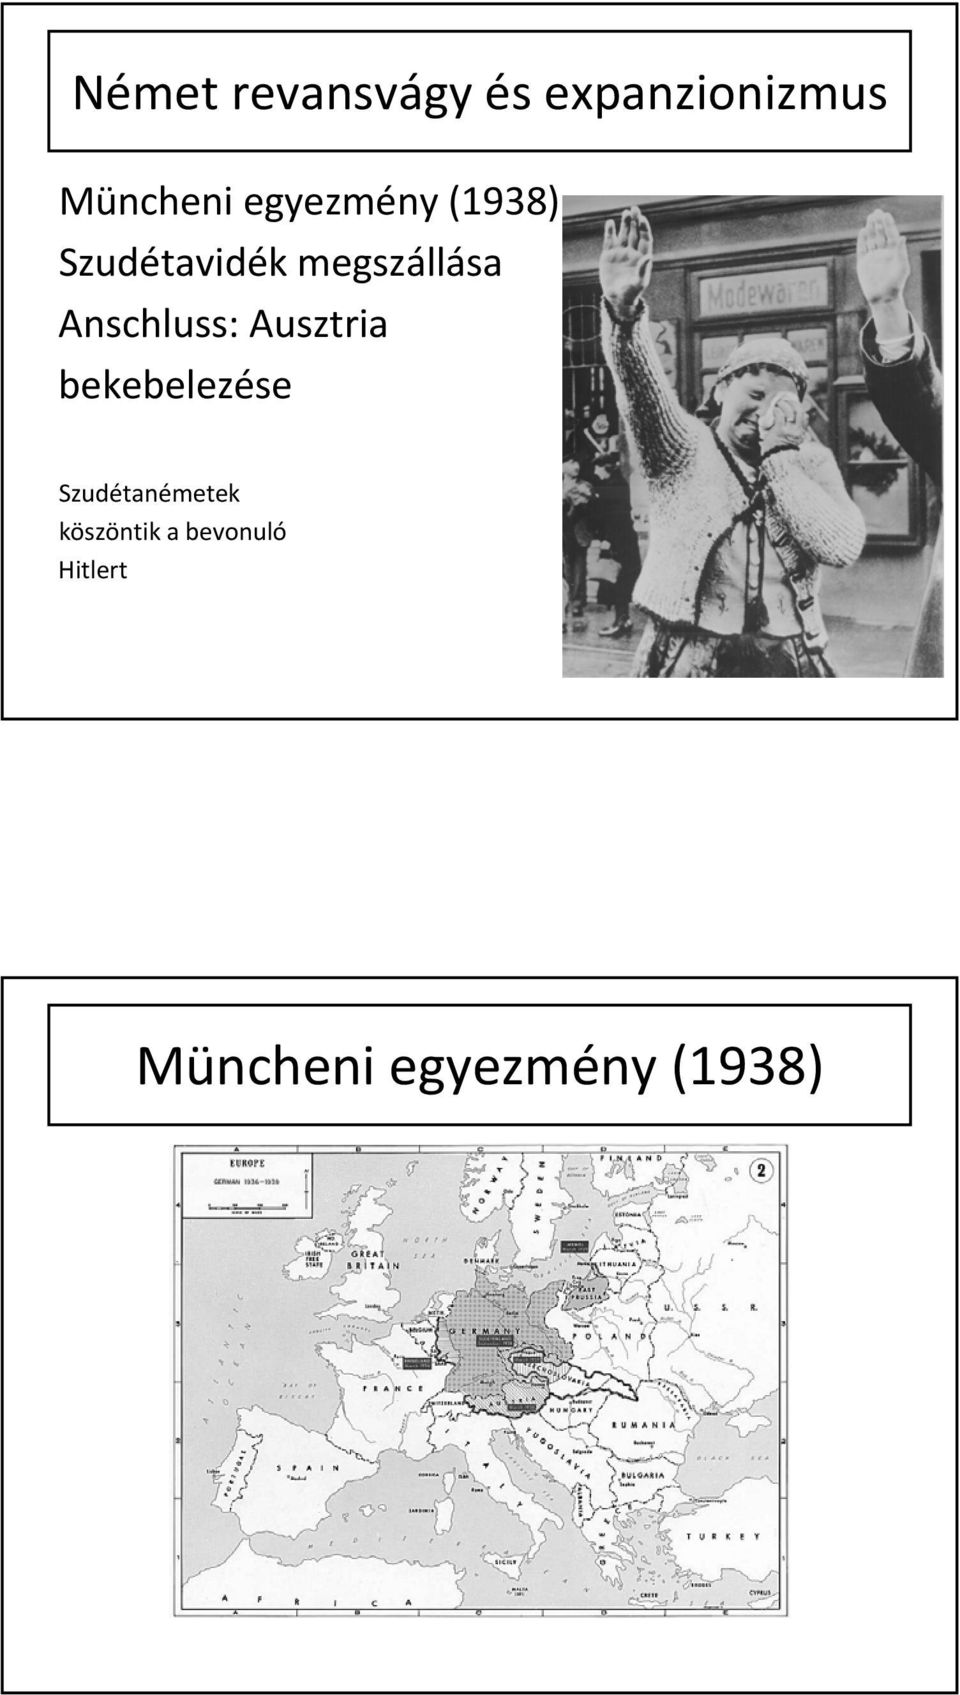 Anschluss: Ausztria bekebelezése